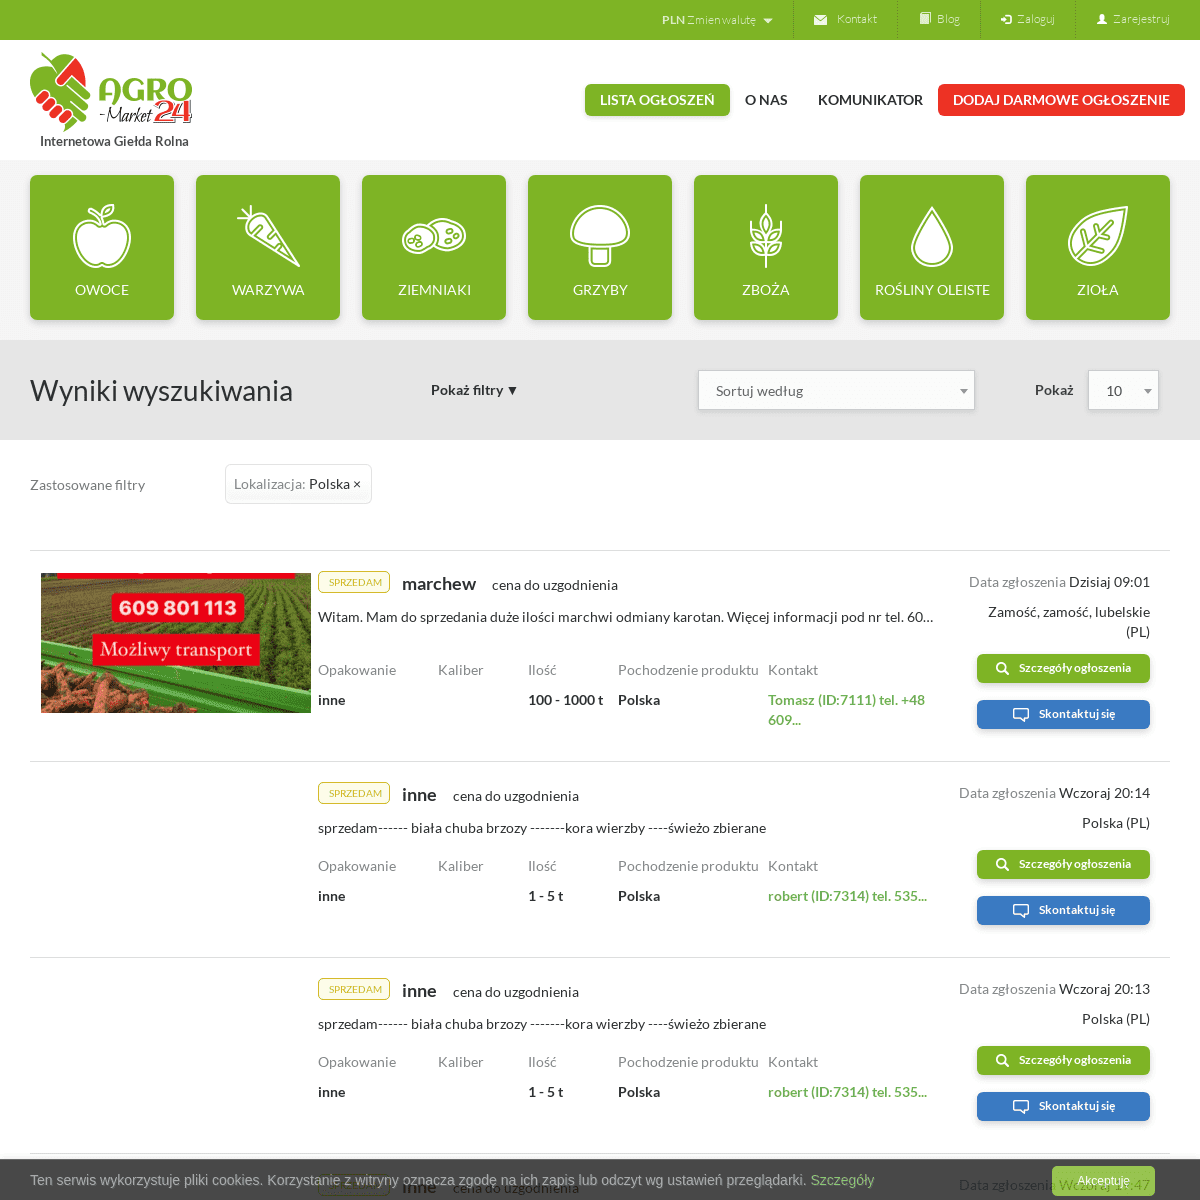 A complete backup of agro-market24.pl